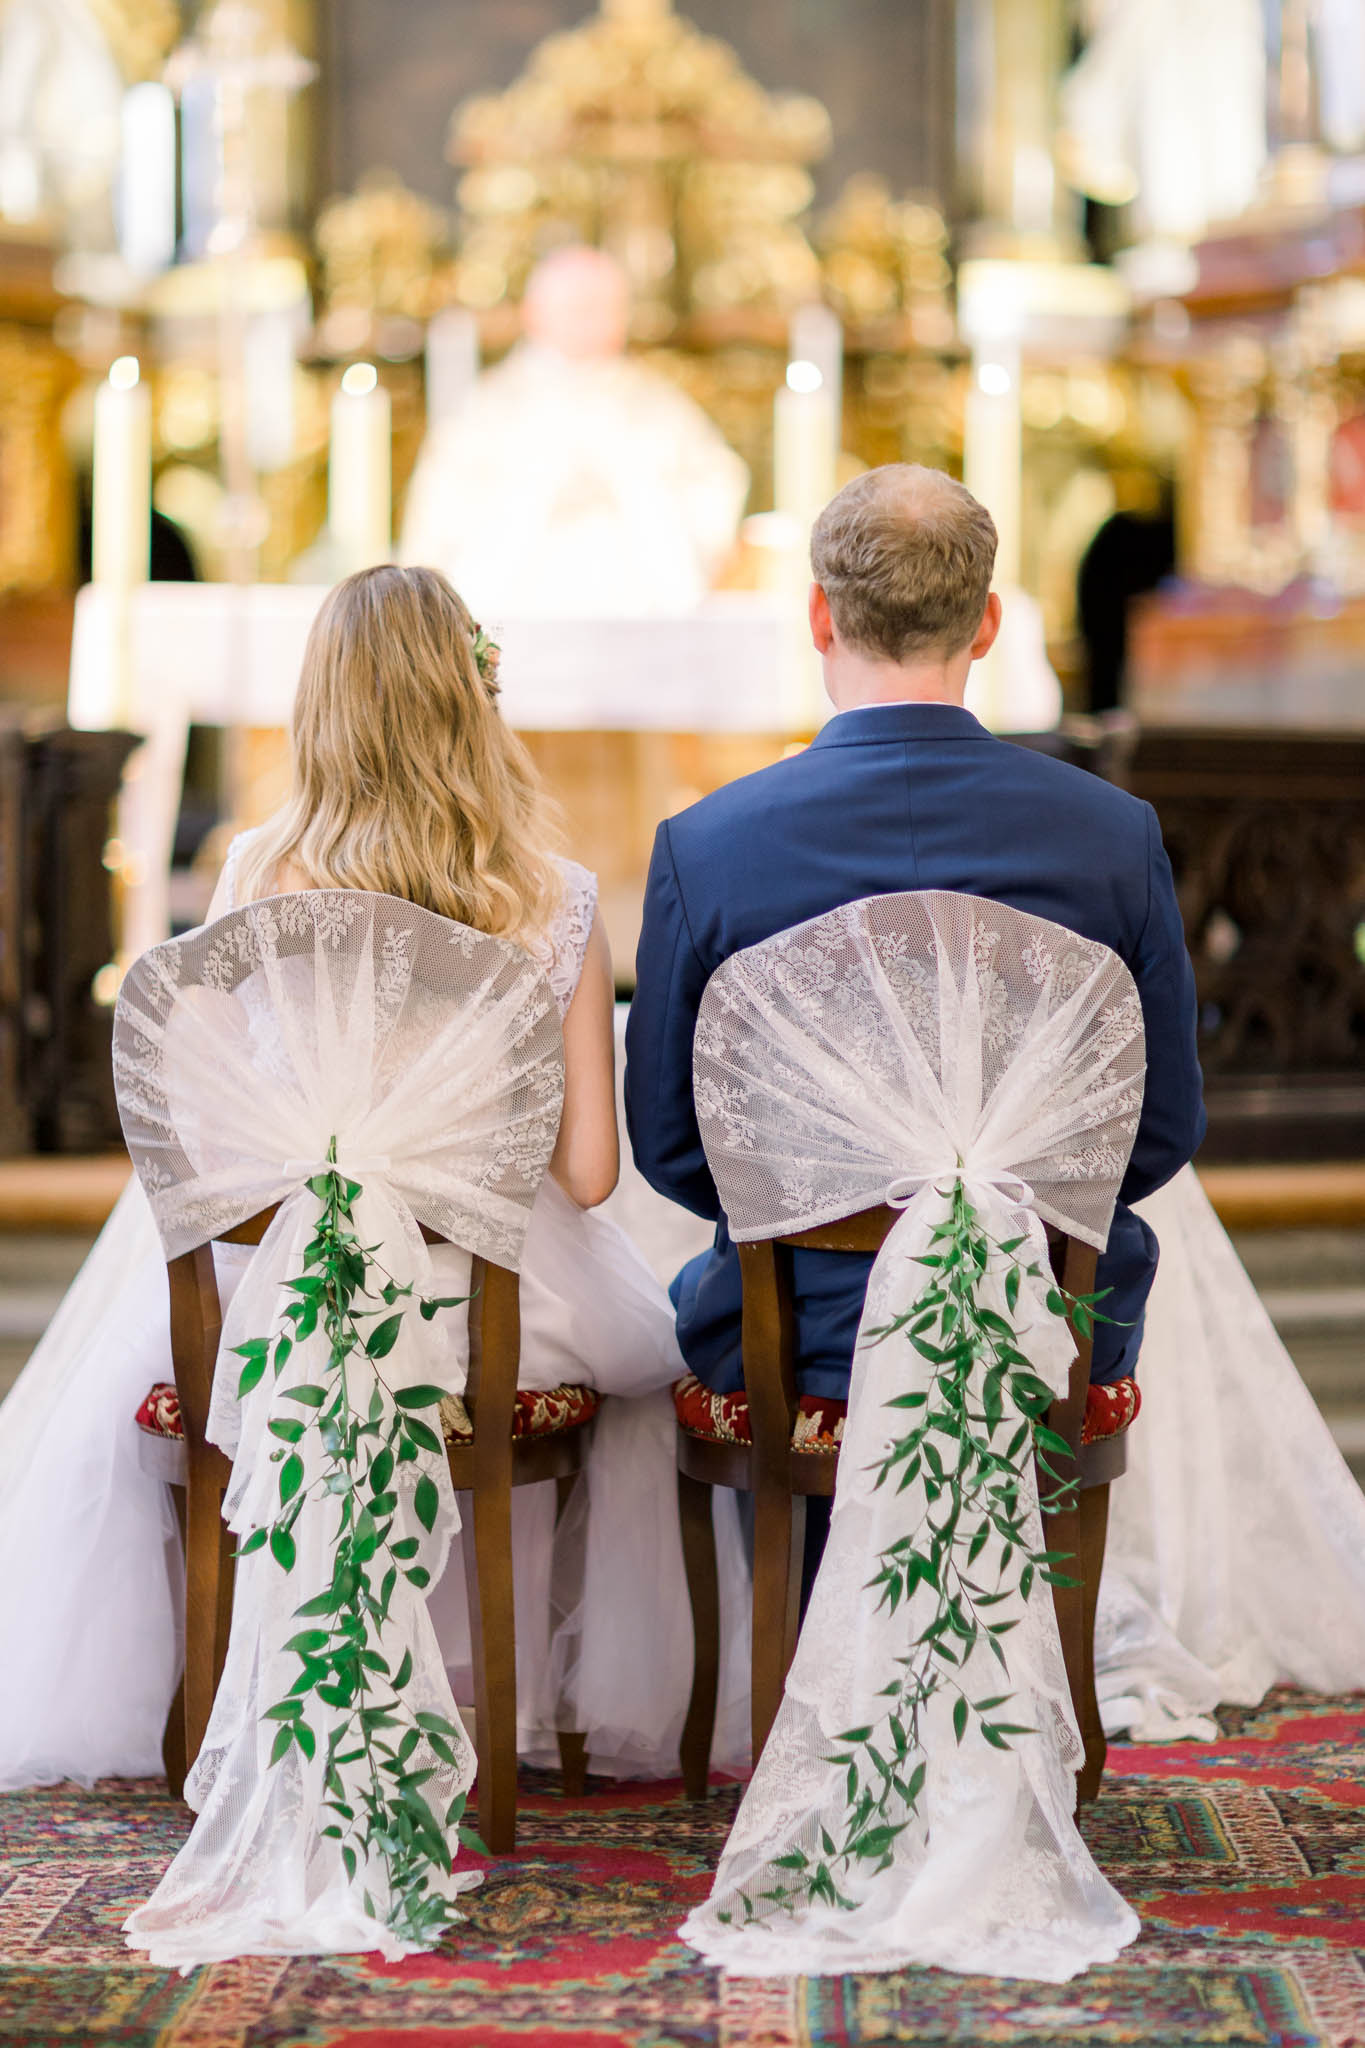 dekoracja krzeseł w kościele na weselu w prowansalskim stylu